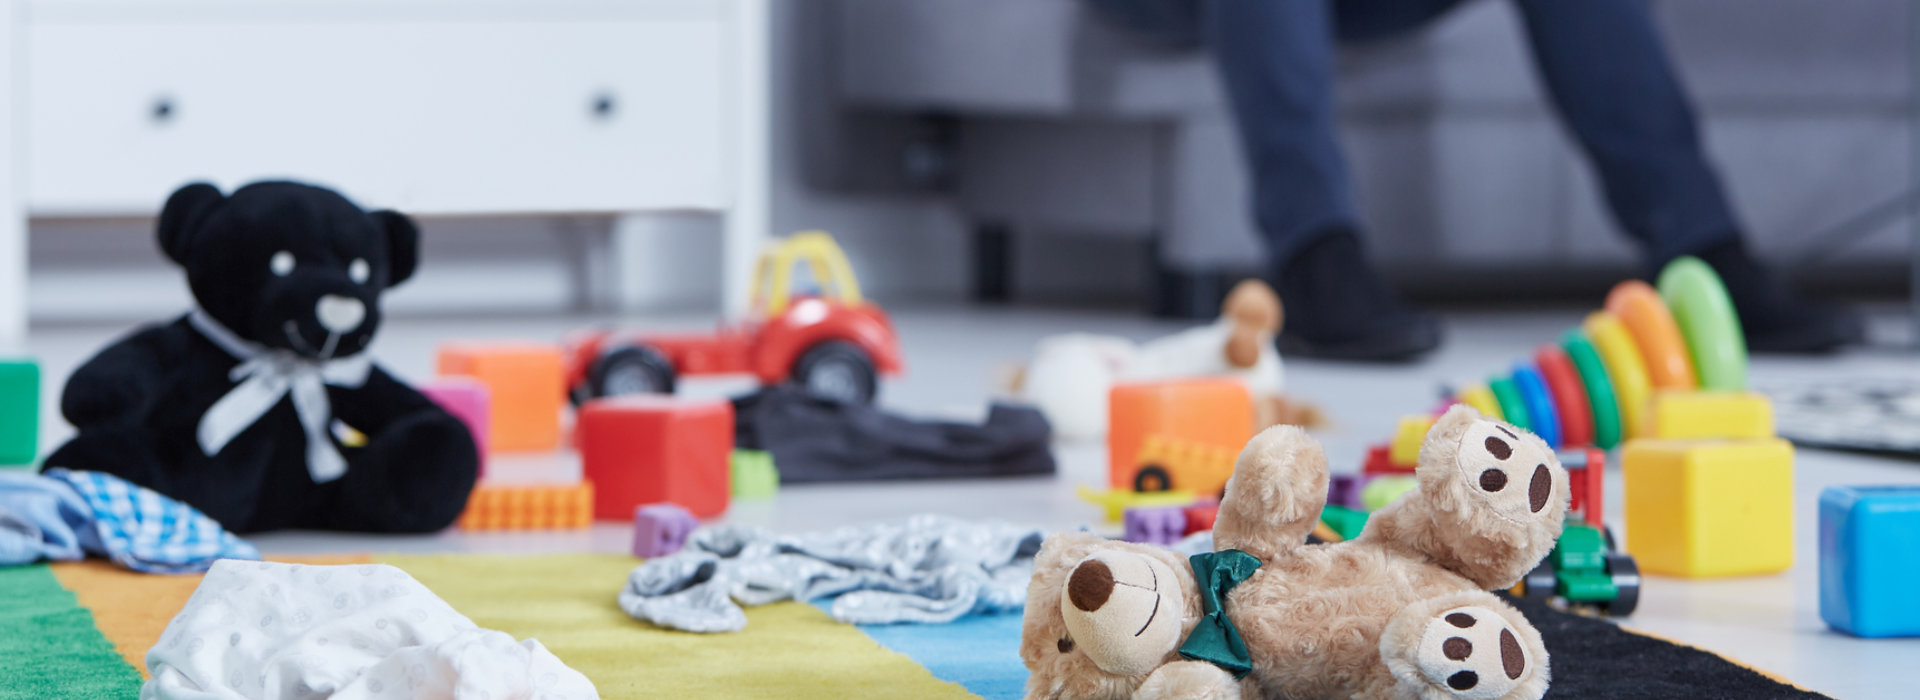 Teddy bears and toys on the floor.